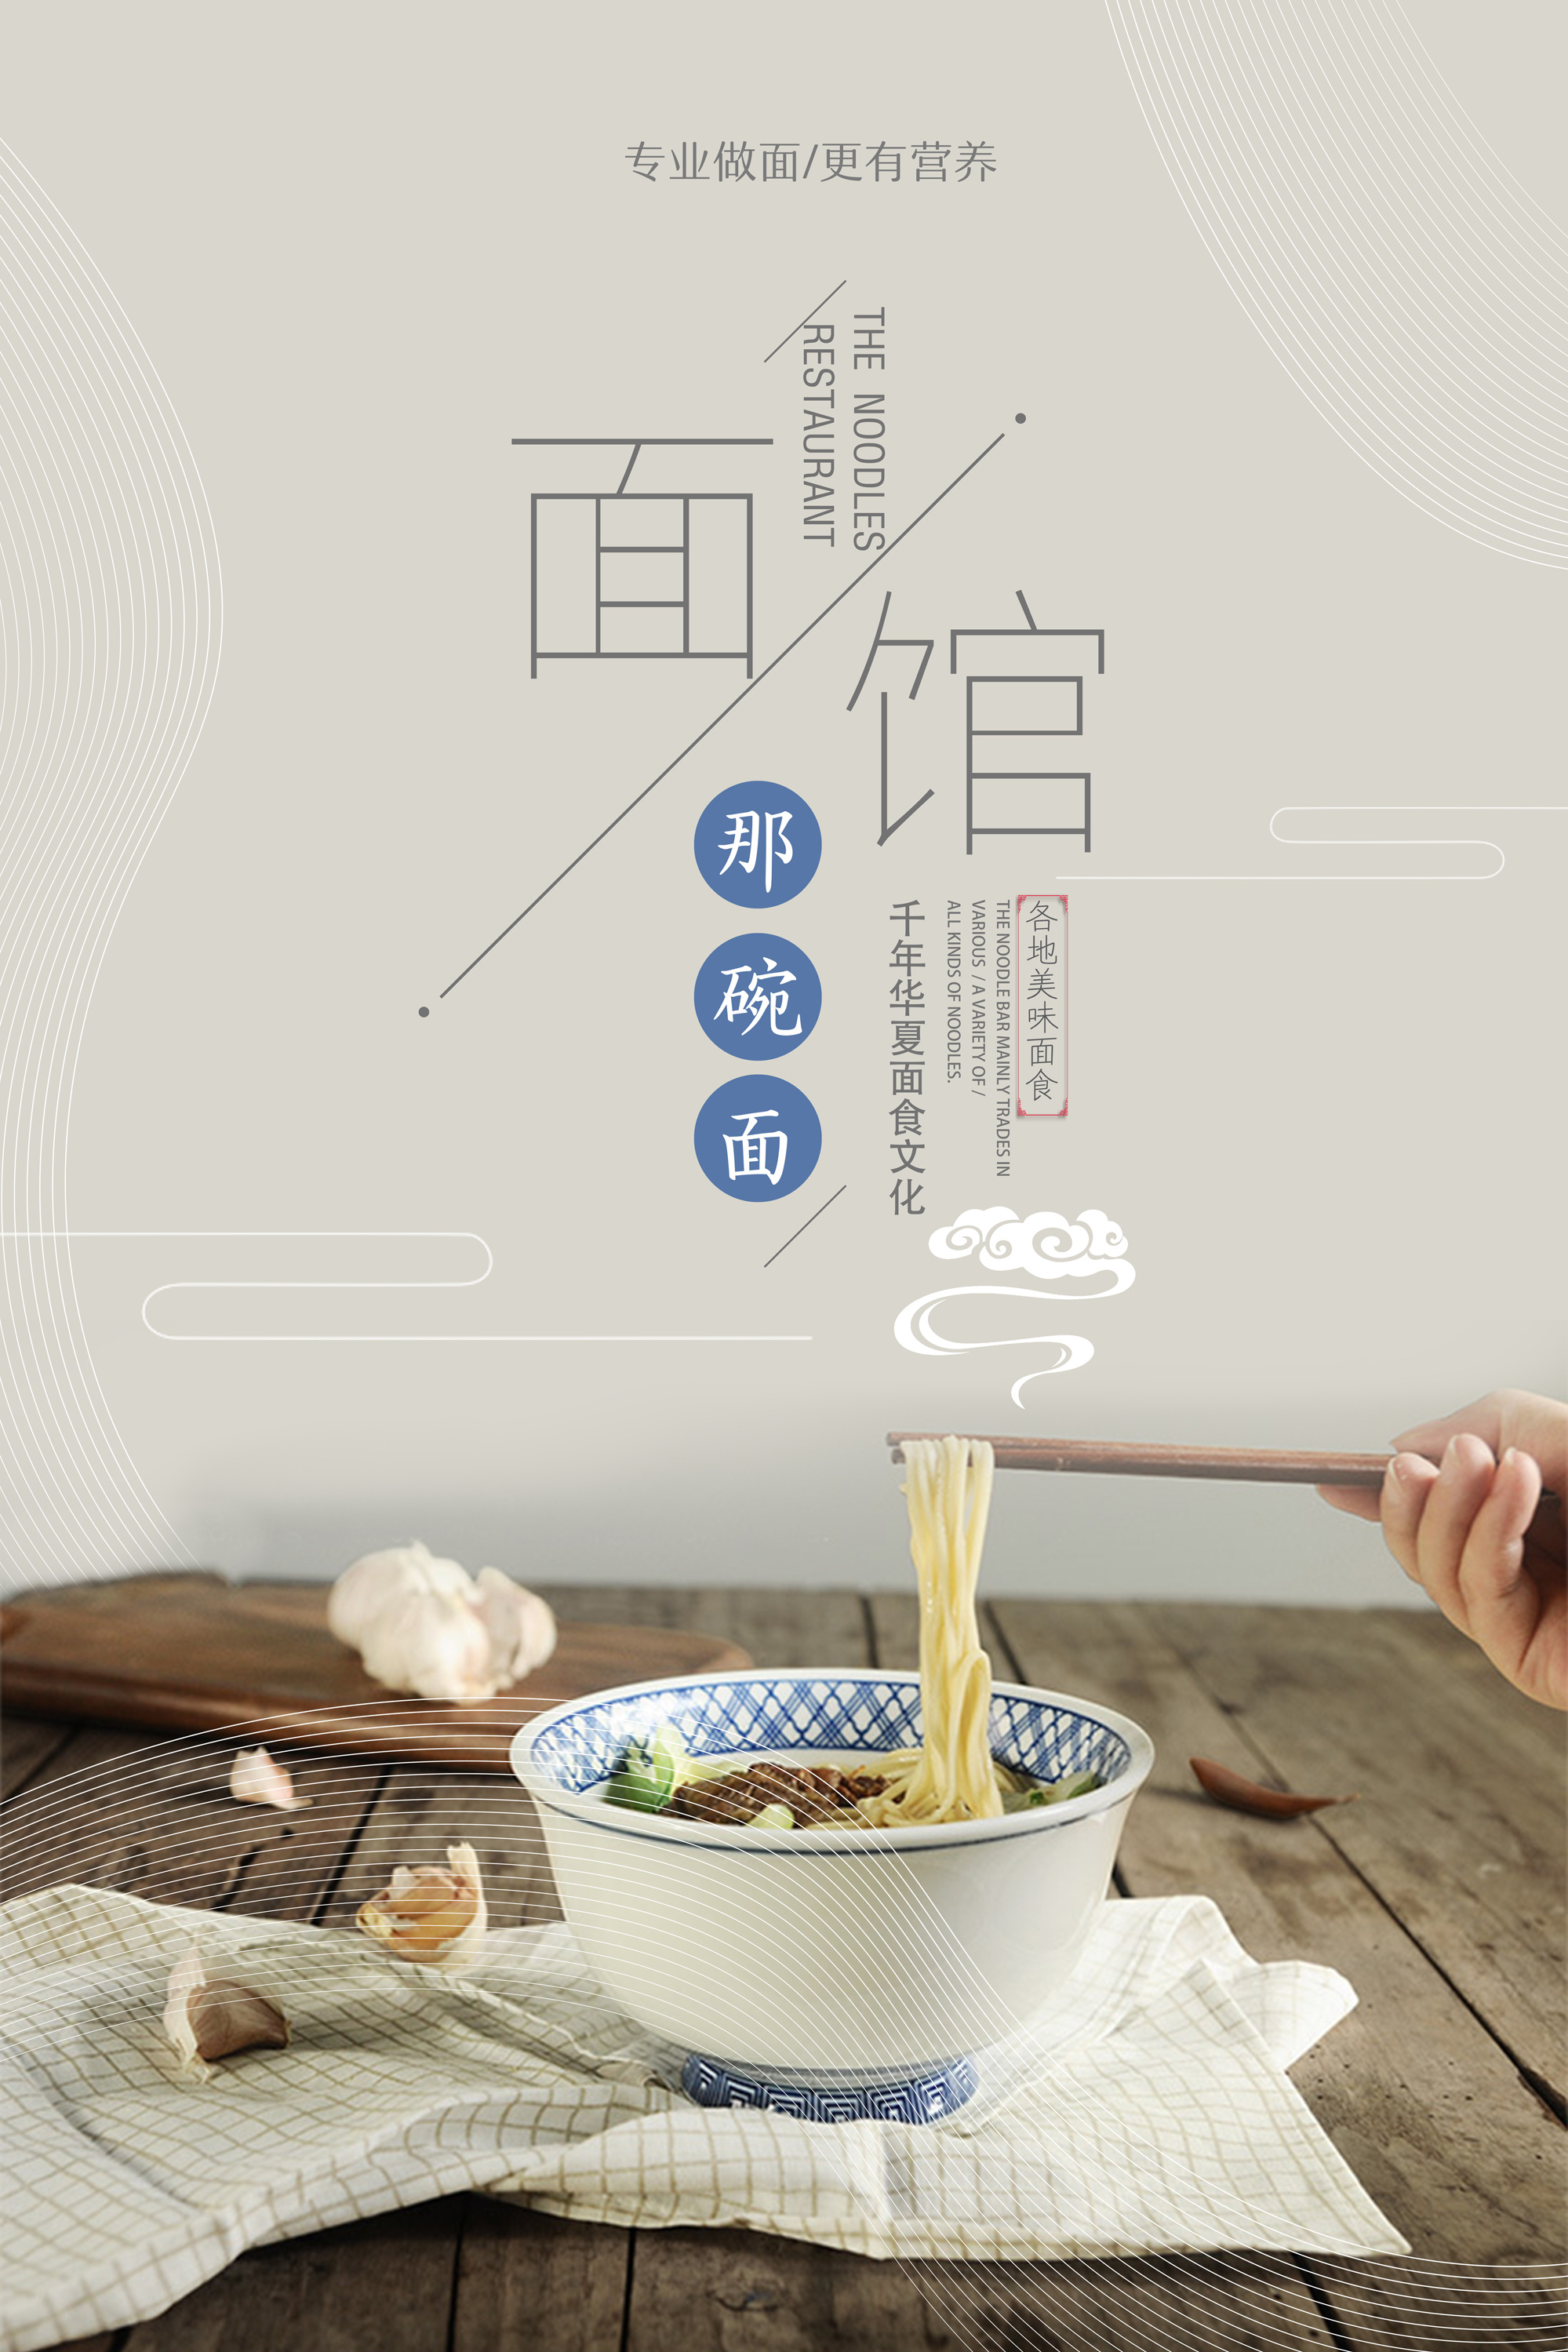 早餐美食移动端系列宣传bannerPSD广告设计素材海报模板免费下载-享设计